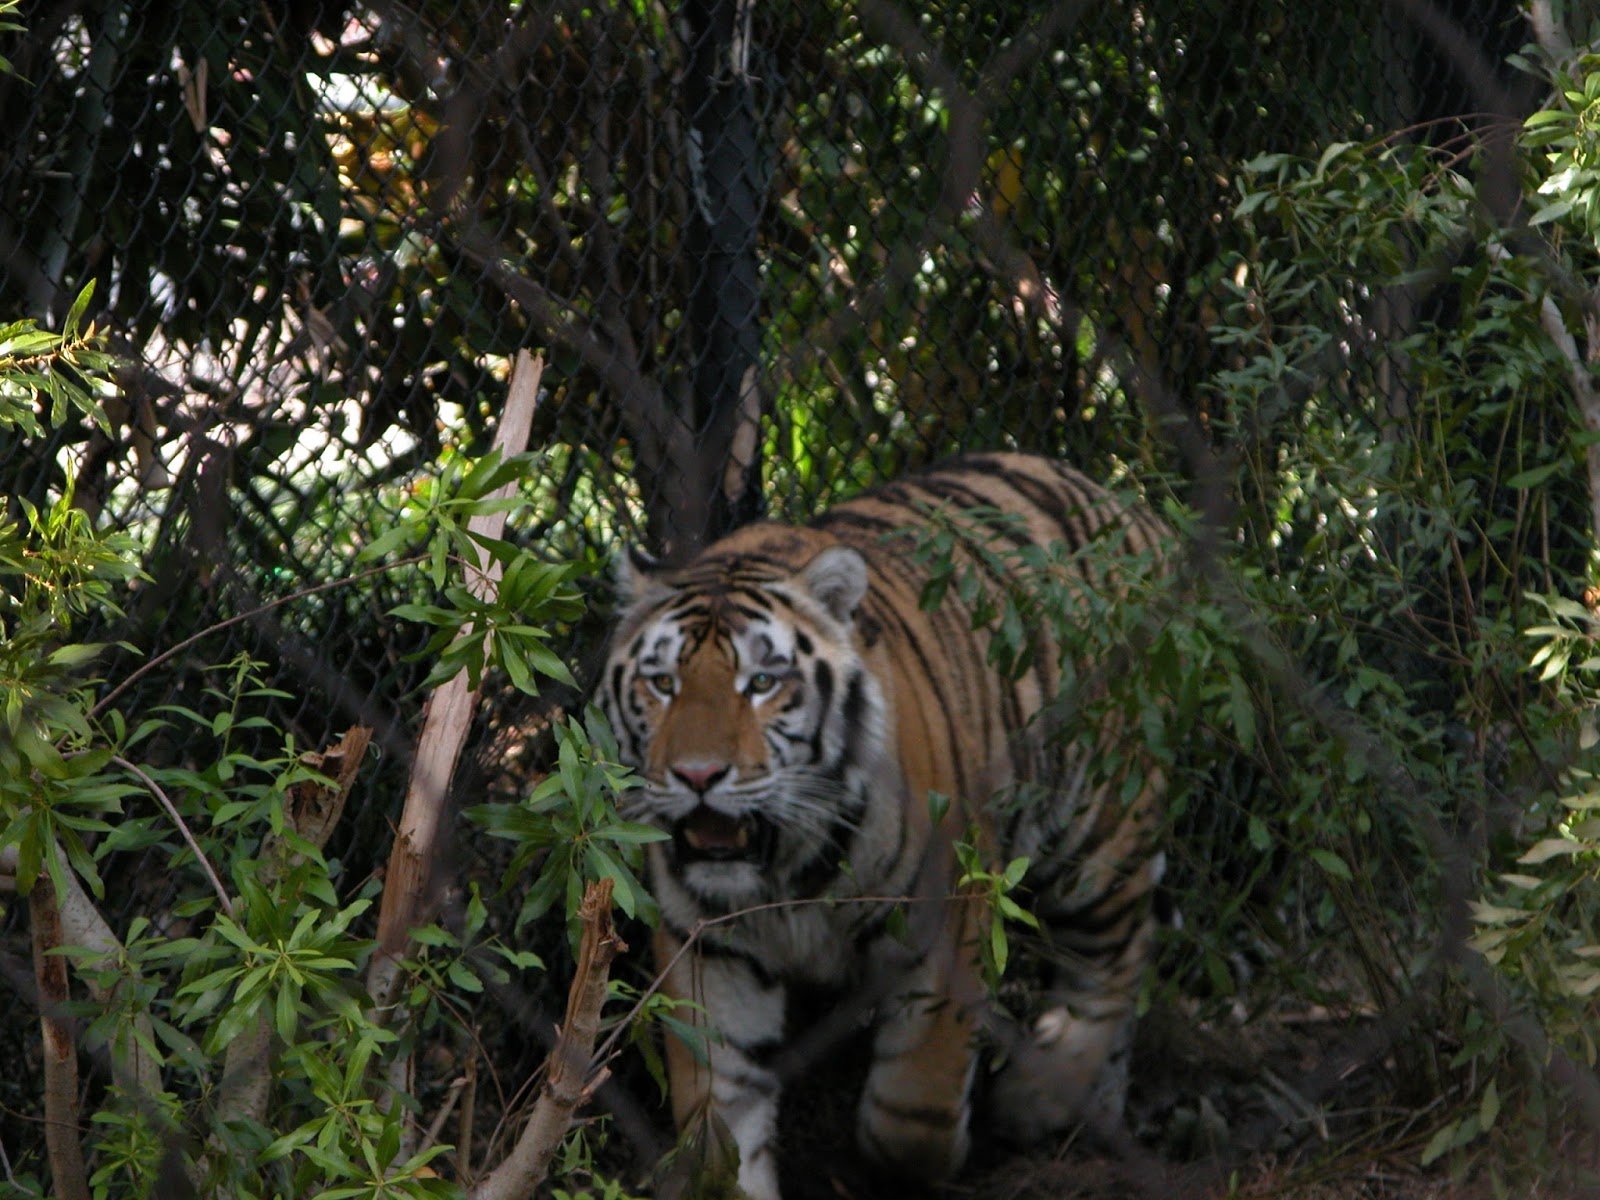 tiger essay in tamil